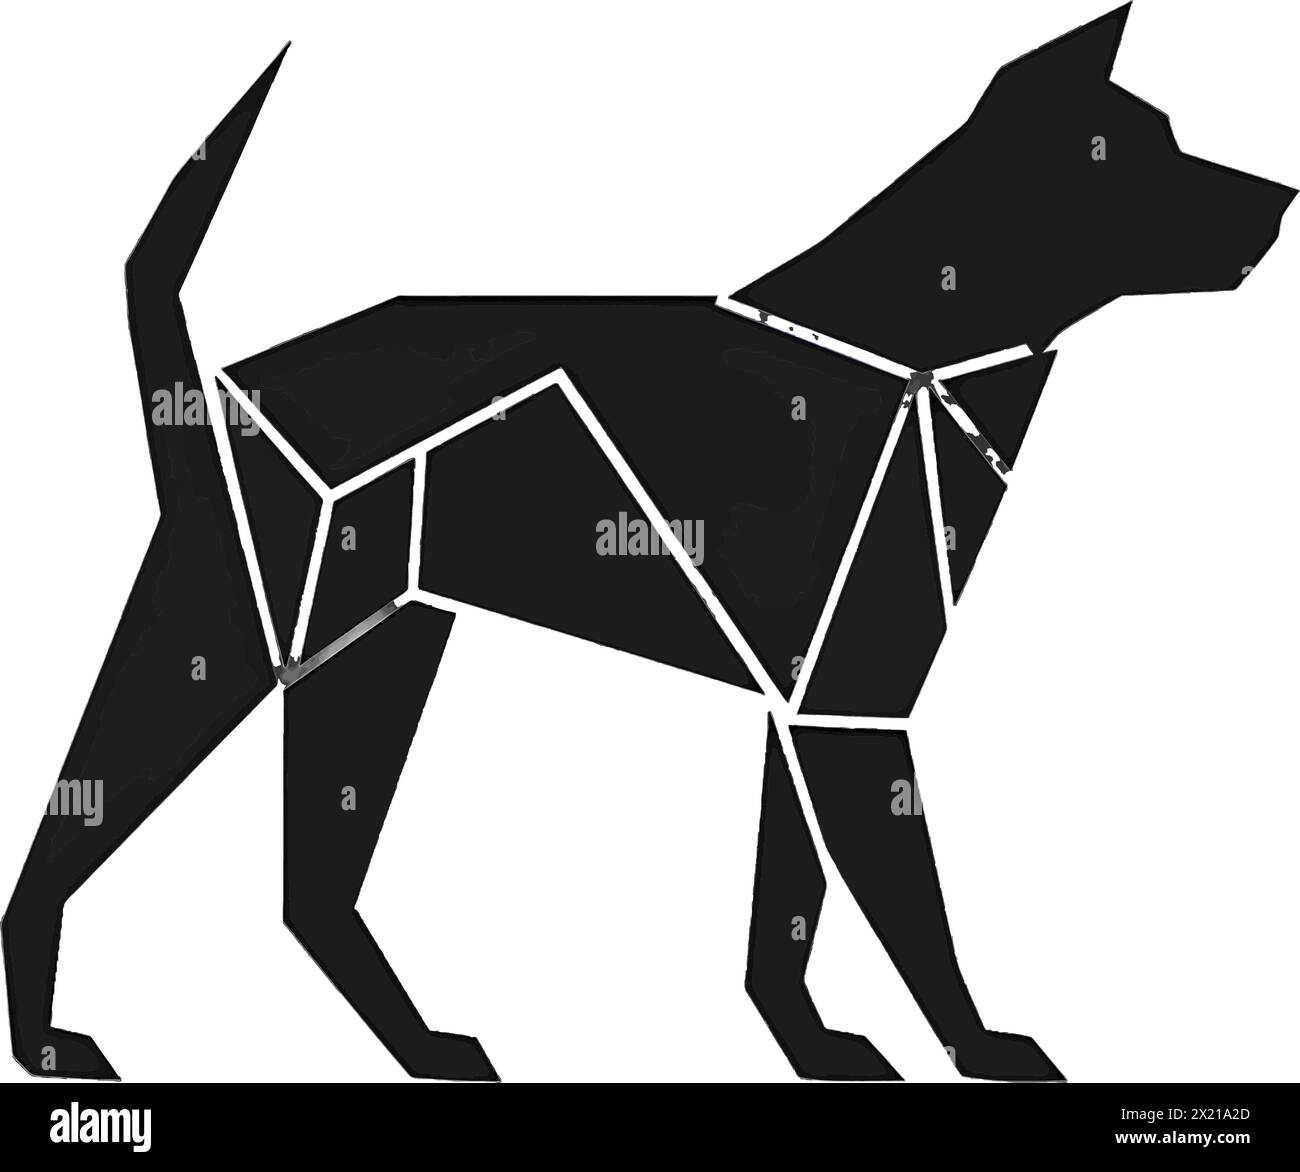 Illustration vectorielle d'un chien en silhouette noire sur un fond blanc propre, capturant des formes gracieuses. Illustration de Vecteur